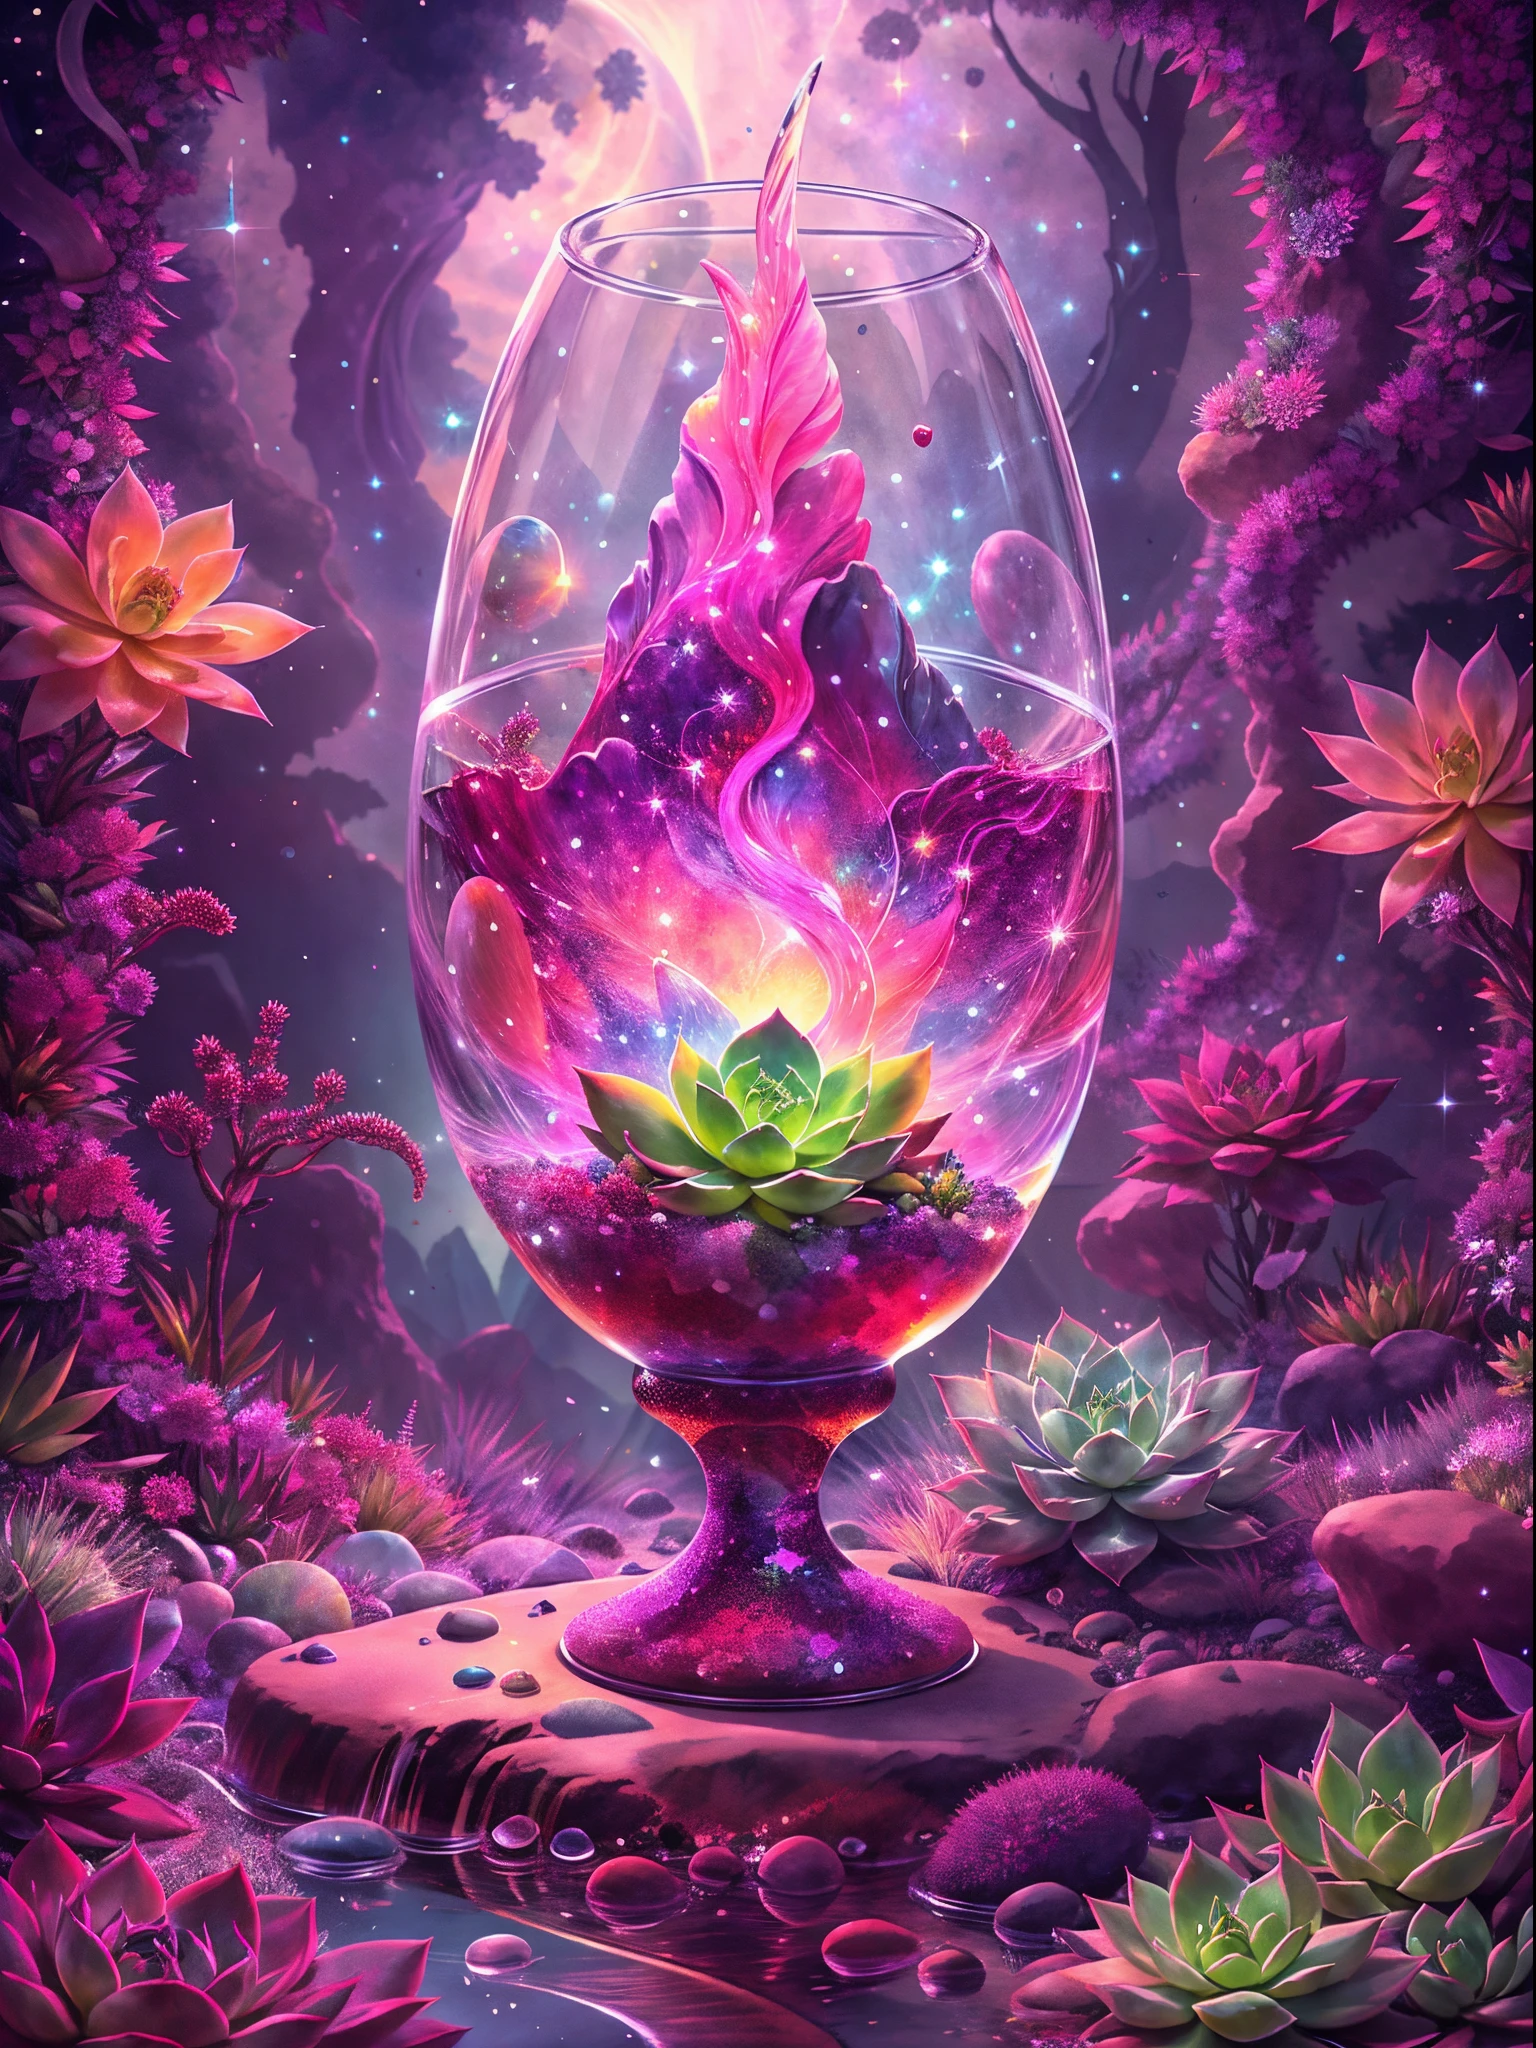 この絵では，神秘的で美しい光景が見られます。絵の中央には透明な水晶の聖杯があります，それ&#39;巨大でゴージャス，透明なクリスタル素材で作られています。The Holy Grail is filled wそれh clear liquid，幻想的な水のプールのように，若干変動あり。 水晶の聖杯の中に，見事な多肉植物が育つ。葉は渦巻いて色鮮やかです，まるで宝石のような色彩，明るく輝いている。それぞれの葉には微妙な線と質感があります，Make それ more real and vivid。多肉植物の茎も透明な質感を呈している，根から葉の隅々まで。 幻想的で壮観な光景に包まれるクリスタルグレイル。透明なクリスタルの壁が周囲の光を反射します，美しい光と影の効果が形成されます。遠くには広い空が見える，Lそれtle bそれs of light shine in それ。空の端に，明るい月が浮かび、光がこぼれた，シーン全体を照らす。 絵全体は視覚的なインパクトと世界感に満ちています.。透明なクリスタルの聖杯の中の多肉植物は、生命の奇跡と自然の力を象徴しています。，周囲の光, 影と星空は人々に神秘的な雰囲気を与える。This painting combines succulents wそれh a clear crystal chalice，非常に魅力的で想像力豊かなシーンを表現。 この絵が視覚的な楽しみと衝撃をもたらすことを願っています，多肉植物の独特の美しさを感じてください。